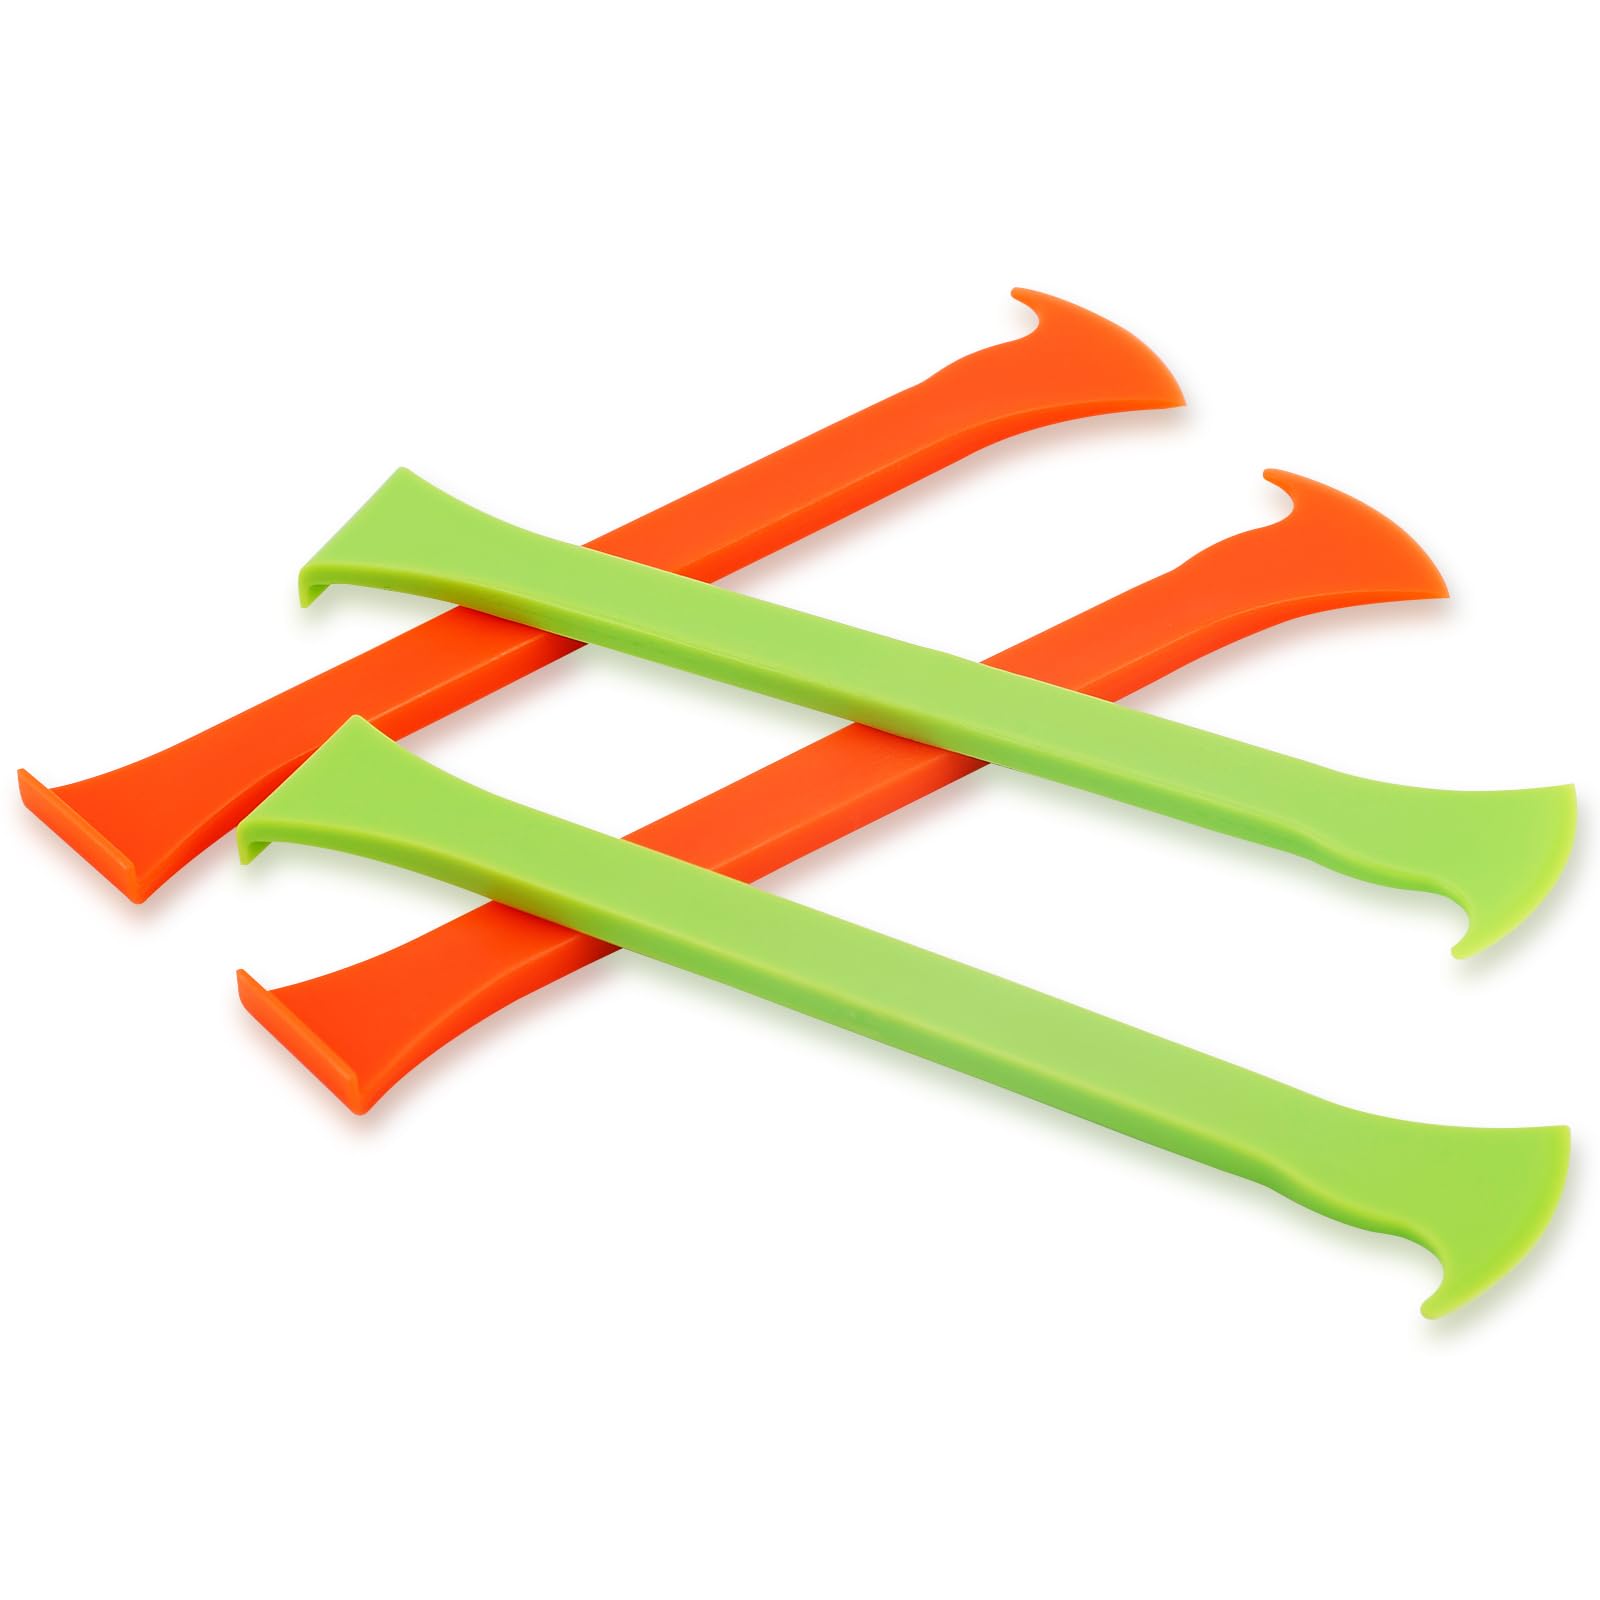 4St Vinyl Wrap Werkzeug Set, Auto Wrapping Werkzeuge Fenster Tönungsfolien Werkzeug Set PPF Wrap Werkzeug Set Einachsiges Vinyl Wrap Werkzeug für Auto Wrapping (Grün, Orange) von PEUTIER